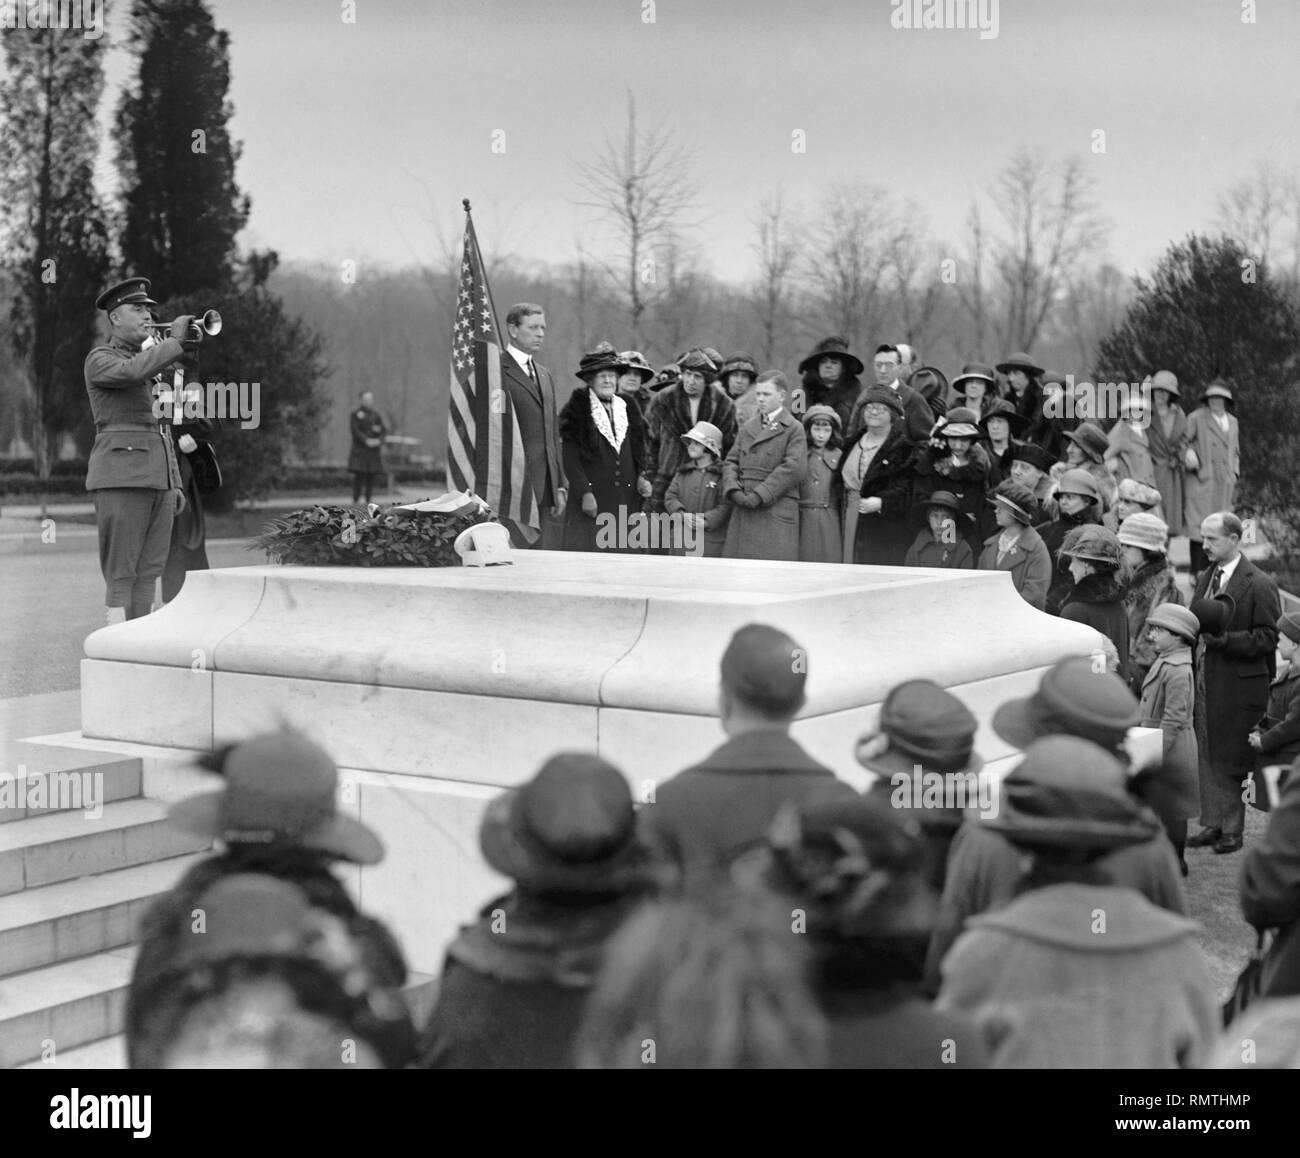 Les enfants de la Révolution américaine sur la Tombe du Soldat inconnu, le Cimetière National d'Arlington, Arlington, Virginia, USA, National Photo Company, 16 avril, 1923 Banque D'Images